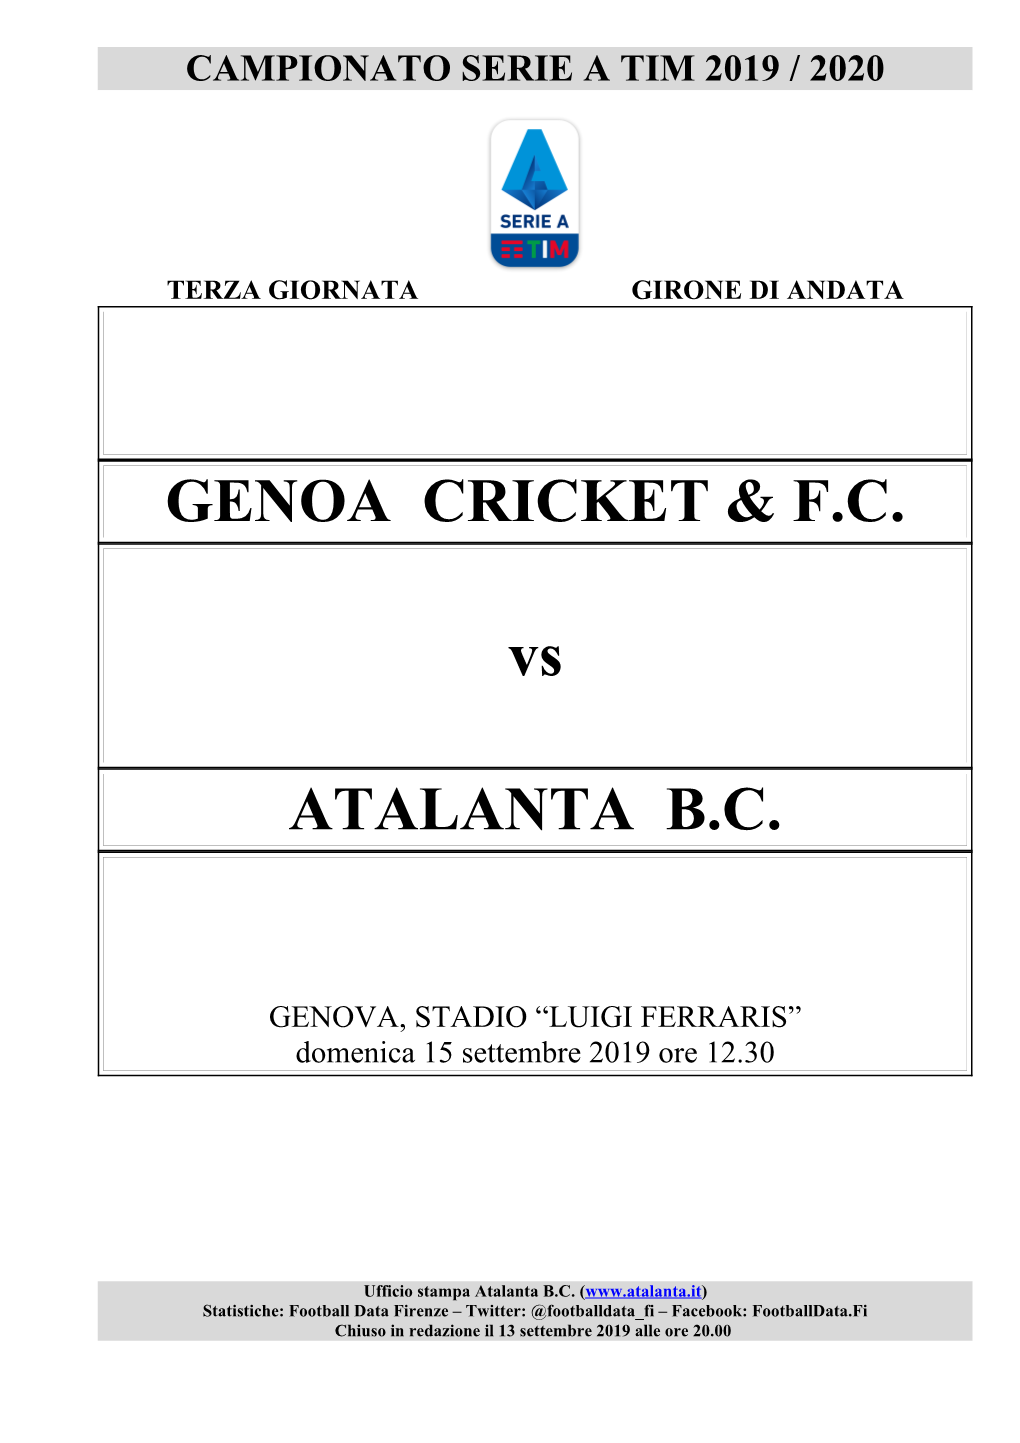 GENOA CRICKET & F.C. Vs ATALANTA B.C